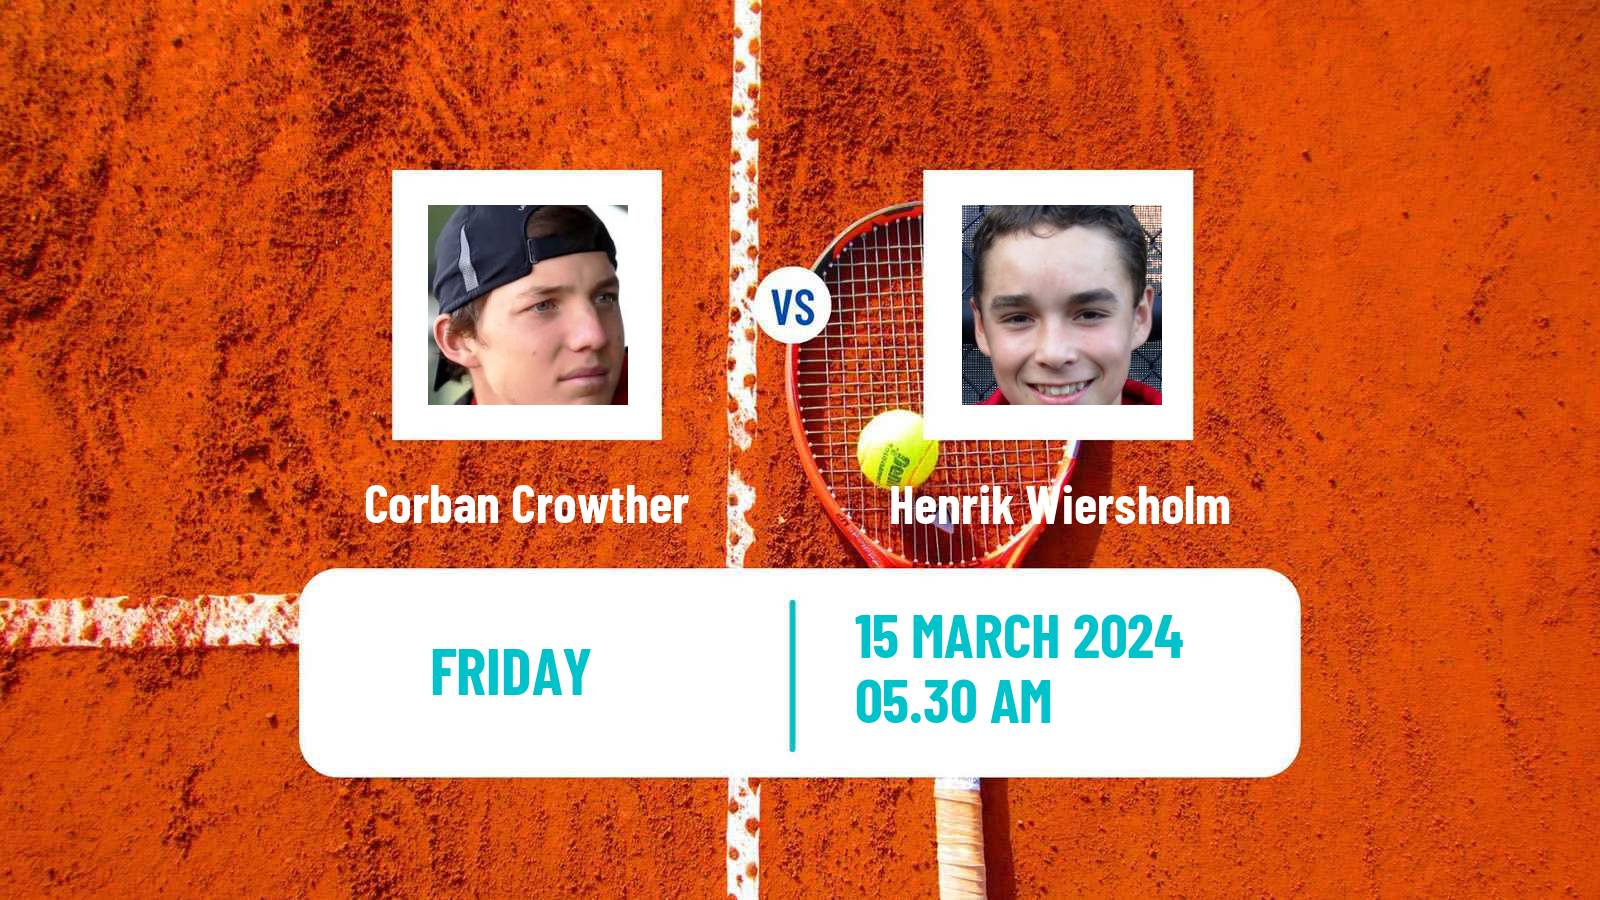 Tennis ITF M15 Heraklion 2 Men Corban Crowther - Henrik Wiersholm